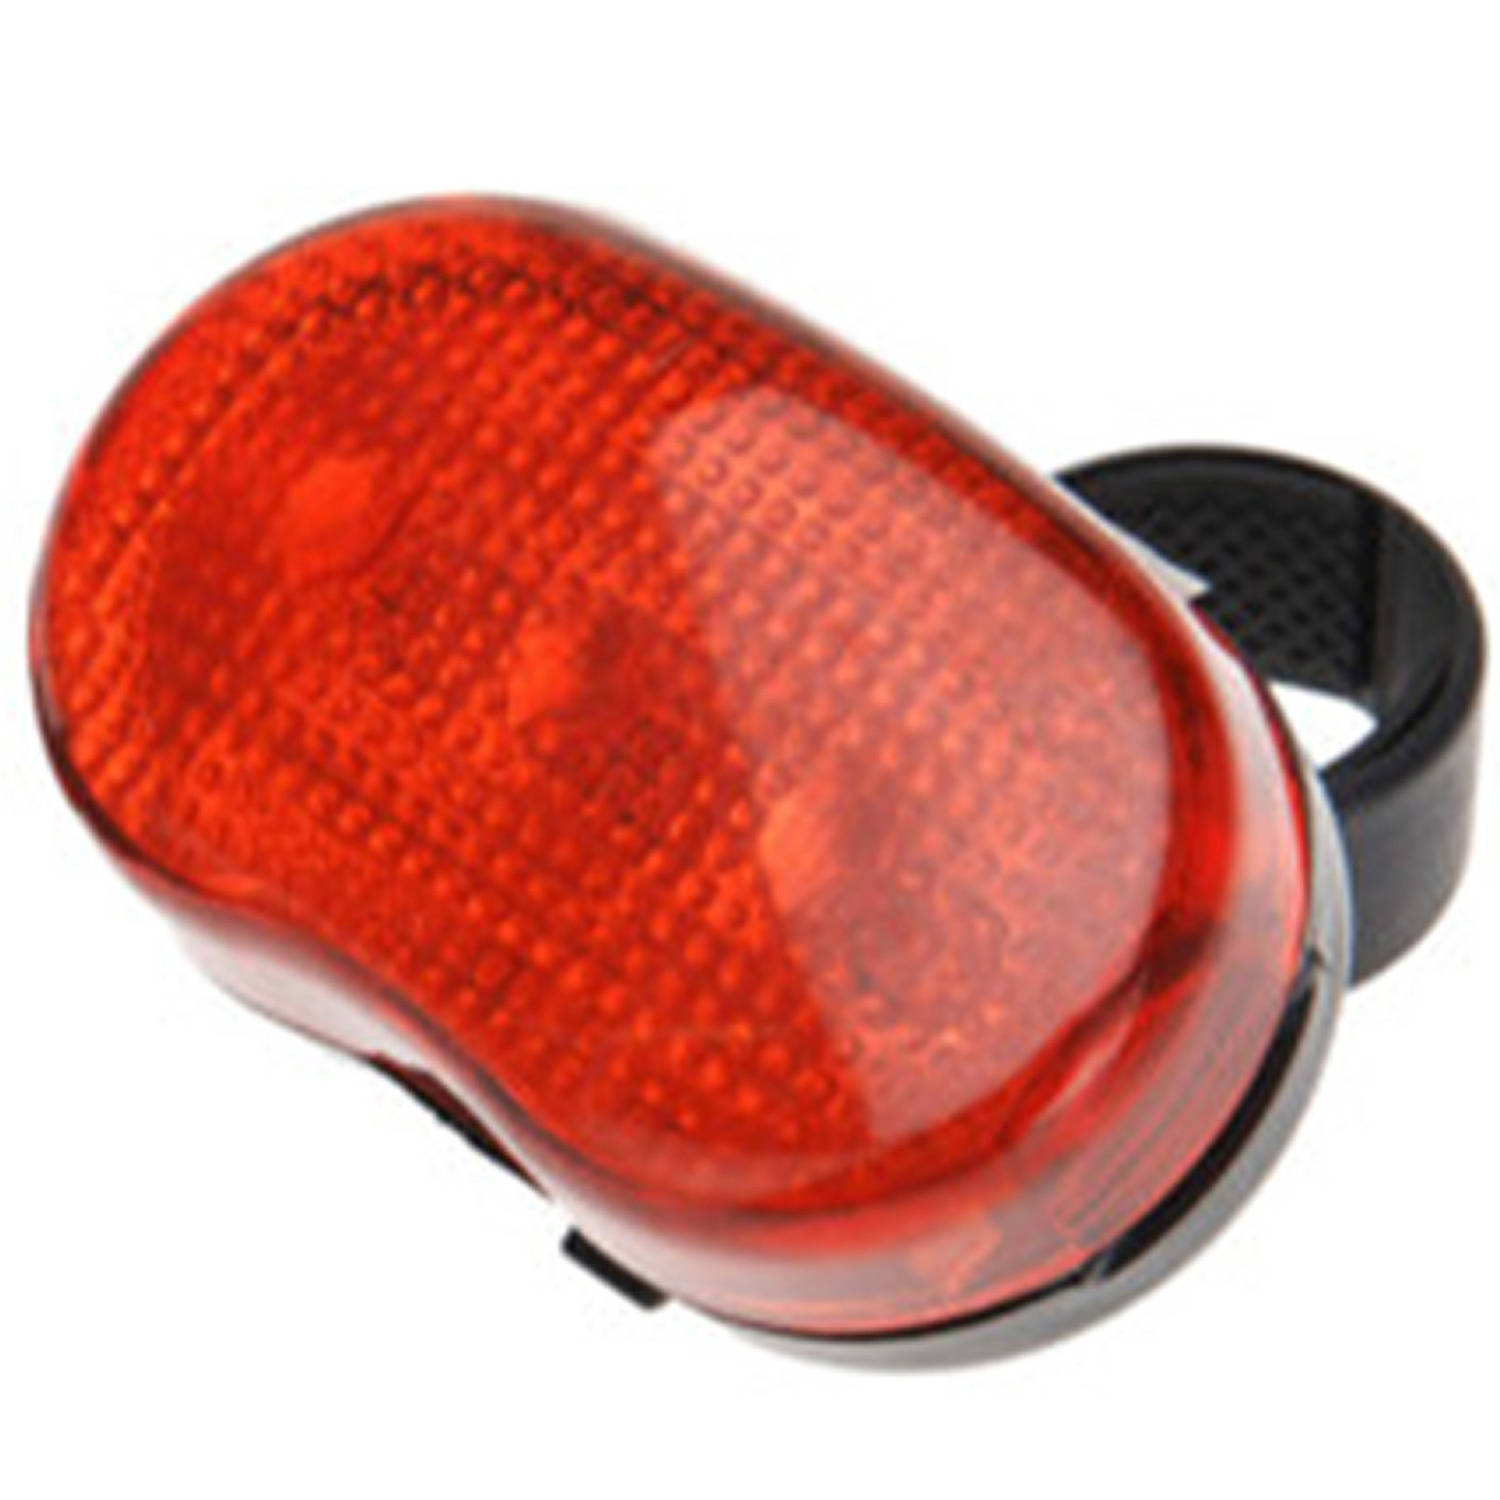 XQMax Fietsverlichting - achterlicht/fietslamp - rood - LED - op batterijen - Fietsverlichting